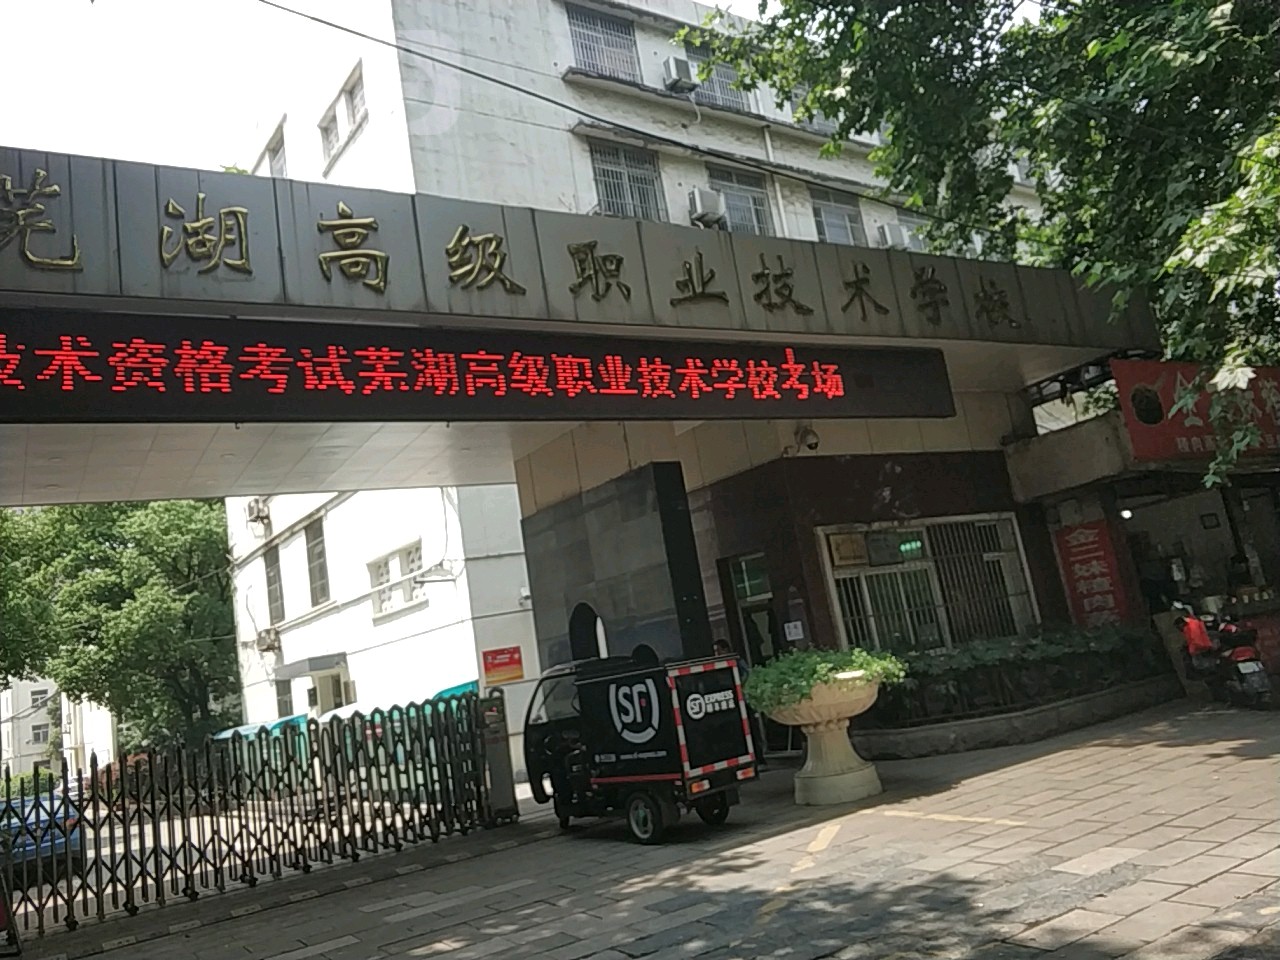 芜湖高级职业技术学校